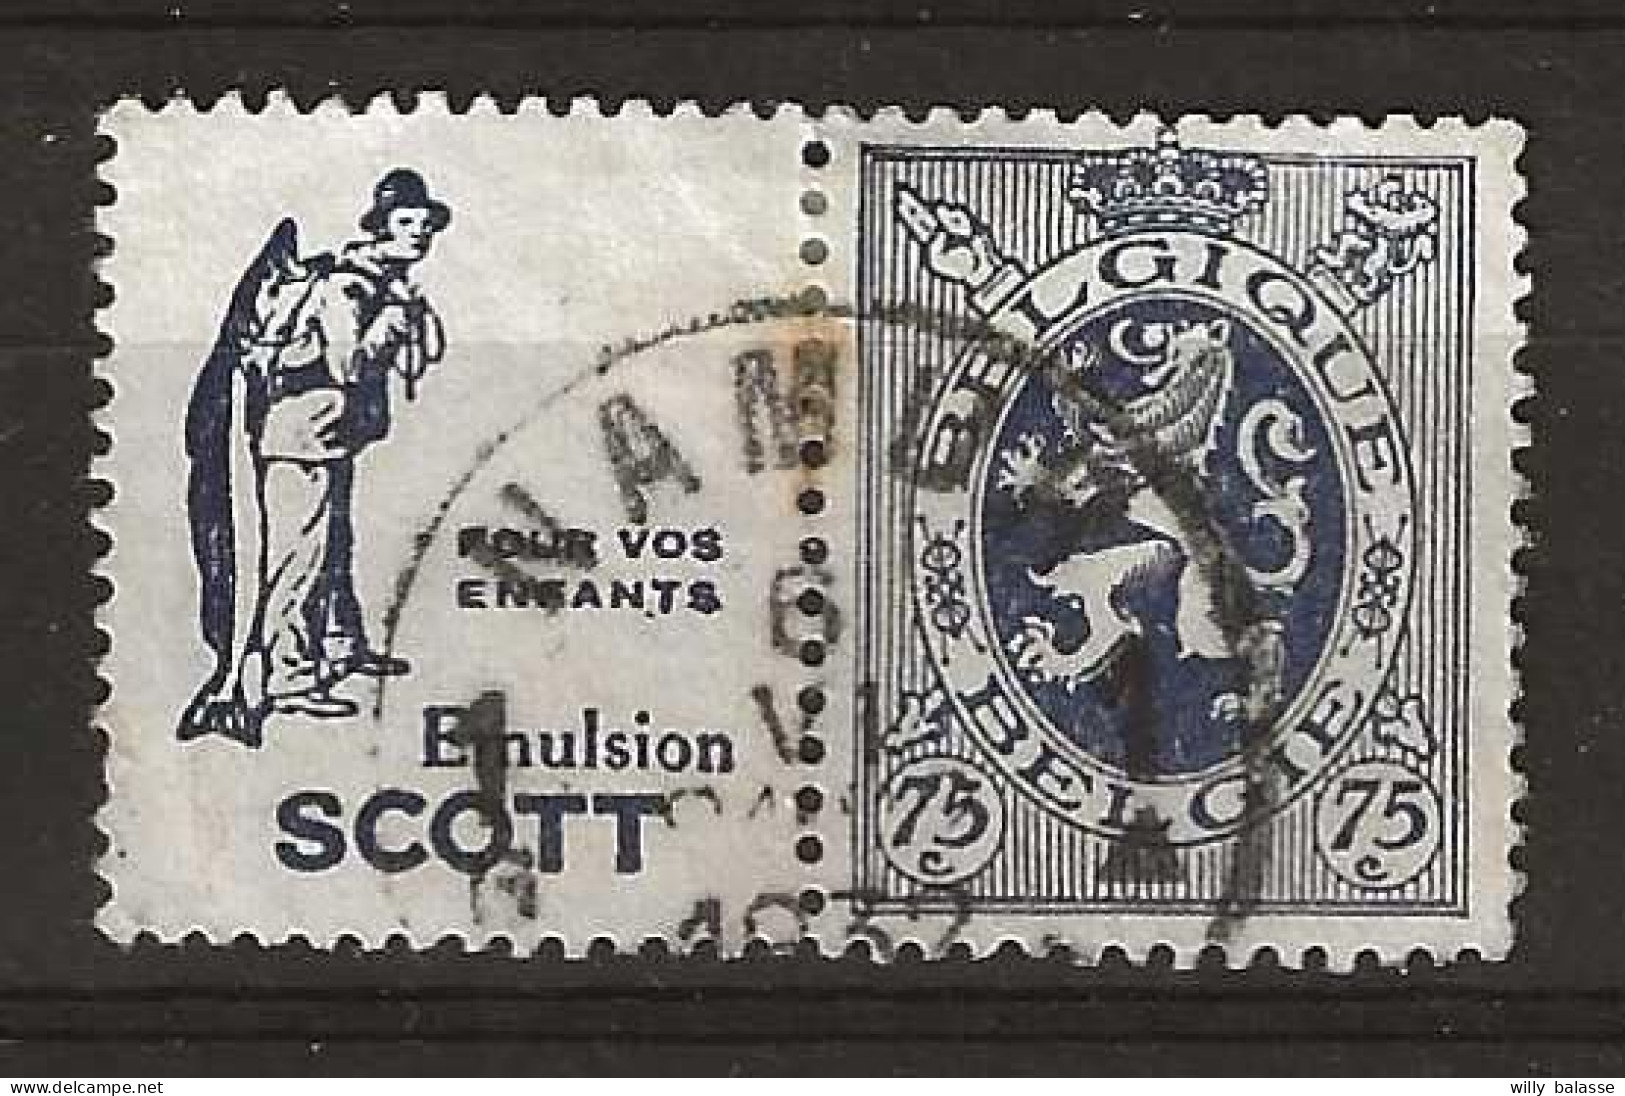 75c Bleu Emultion Scott  Enfants Obl NAMUR /1932 - Used